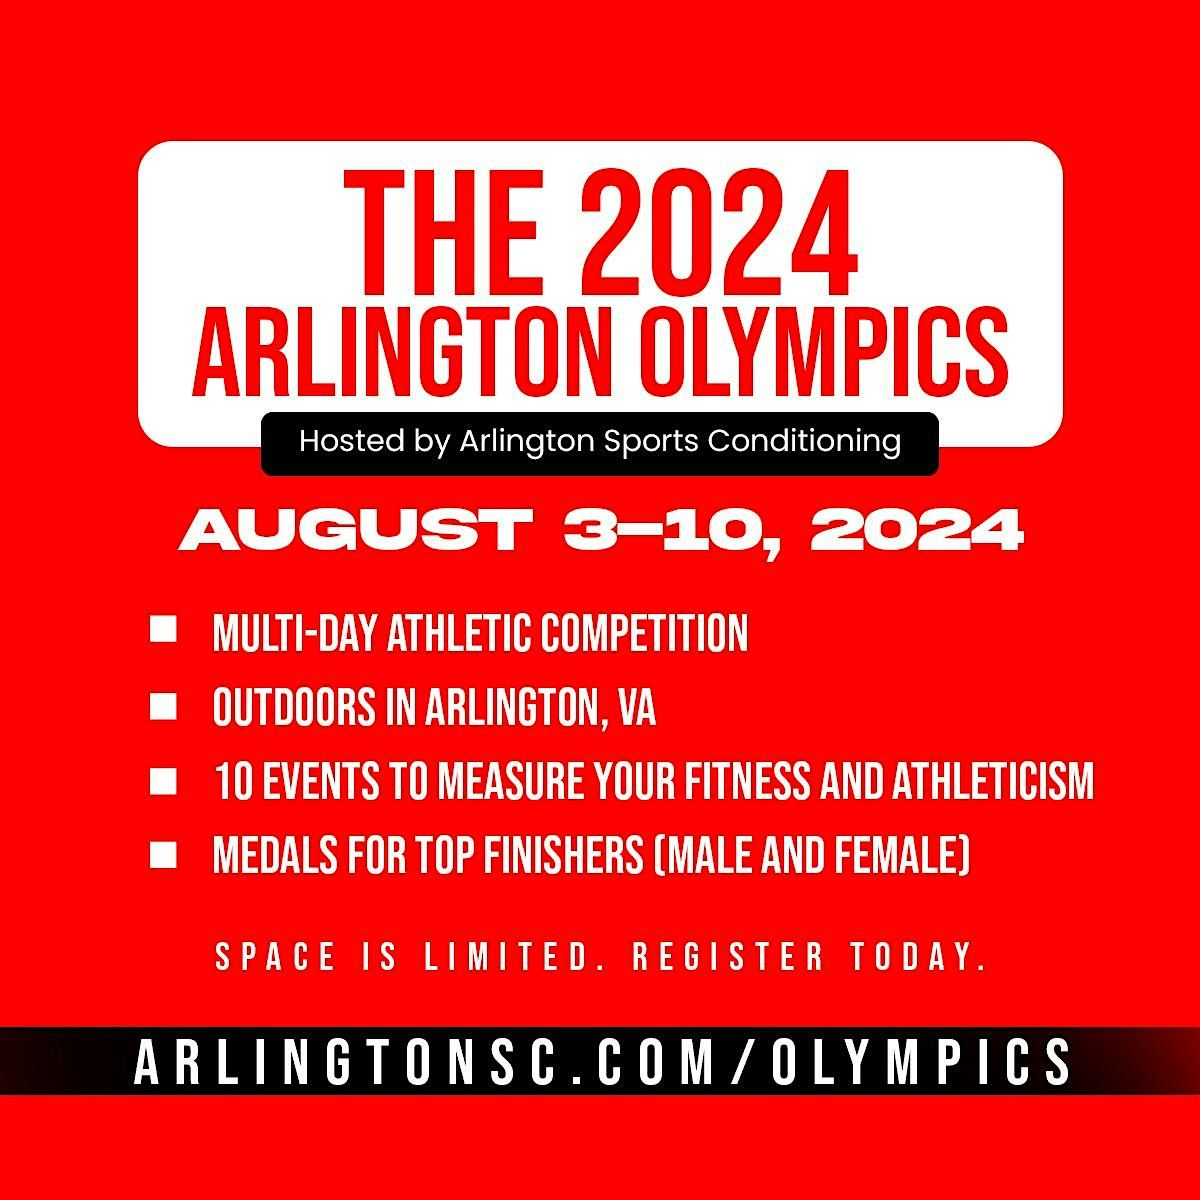 The 2024 Arlington Olympics: Day 3 of 5